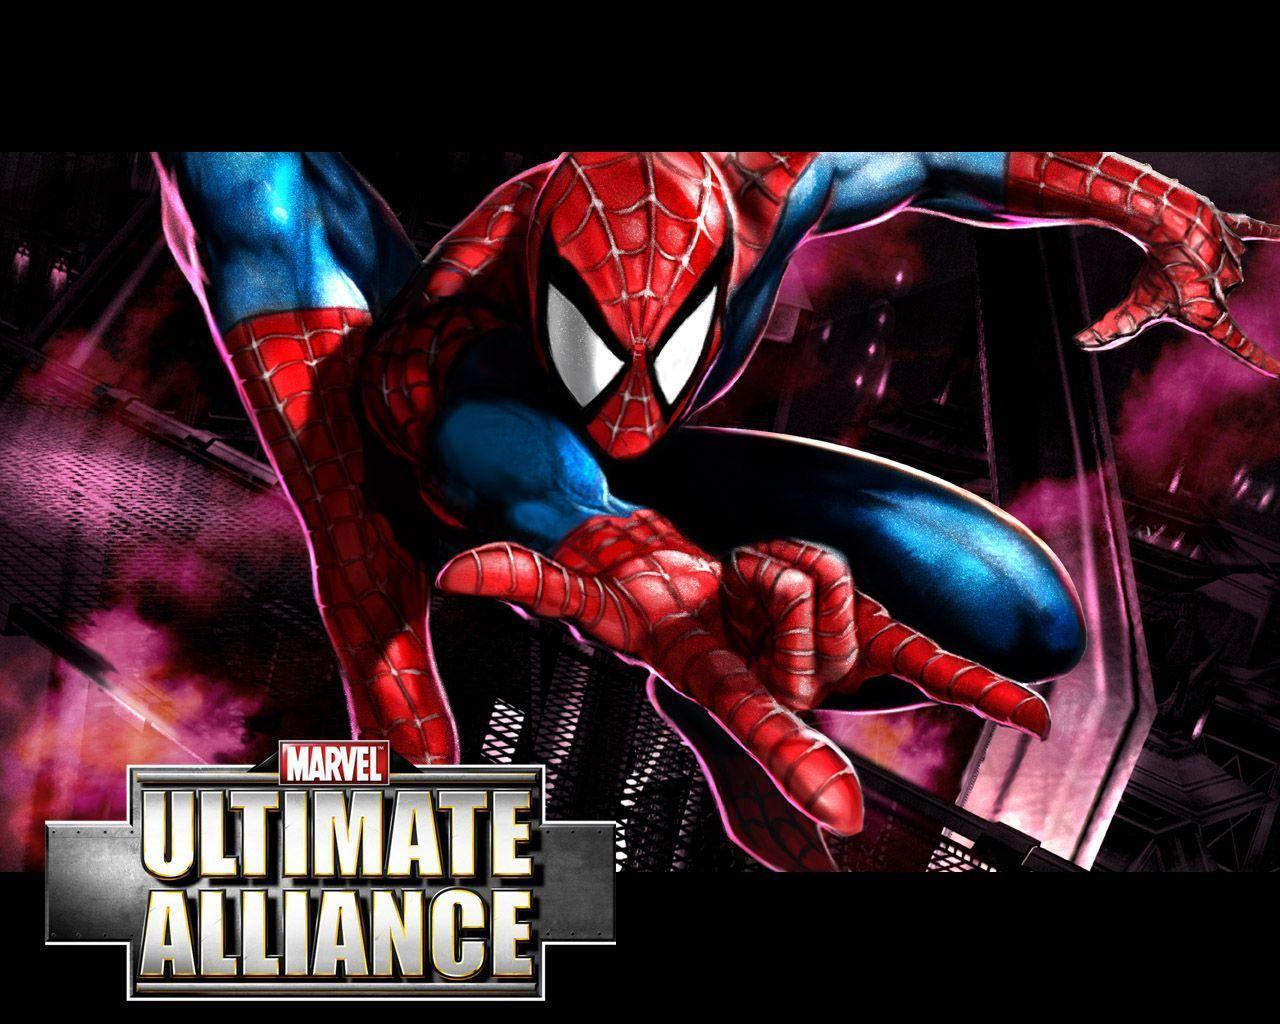 Walpaper Vortex: Spiderman Wallpaper Amazing Spiderman